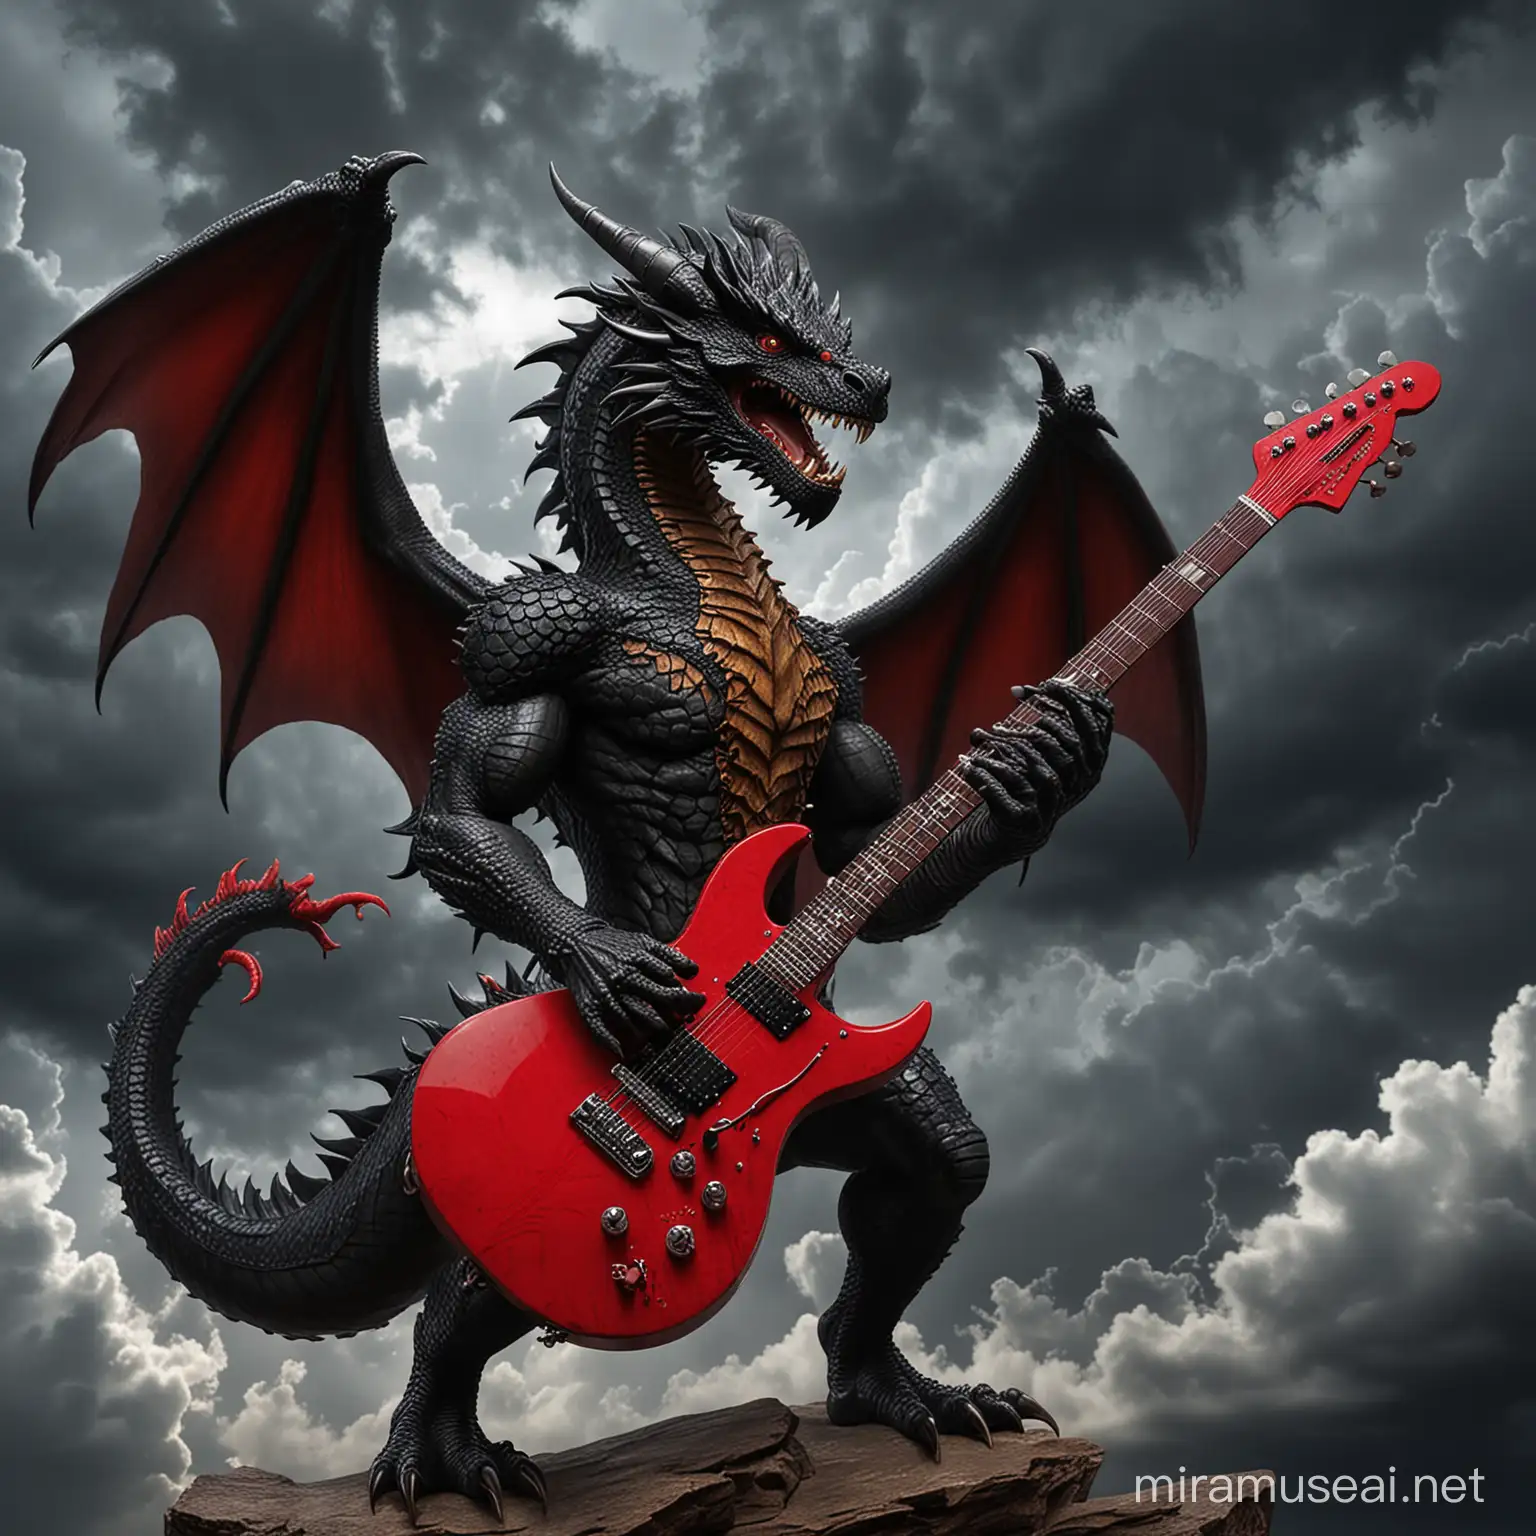 dragón negro tocando una guitarra eléctrica roja de puntas, con un fondo de tormenta